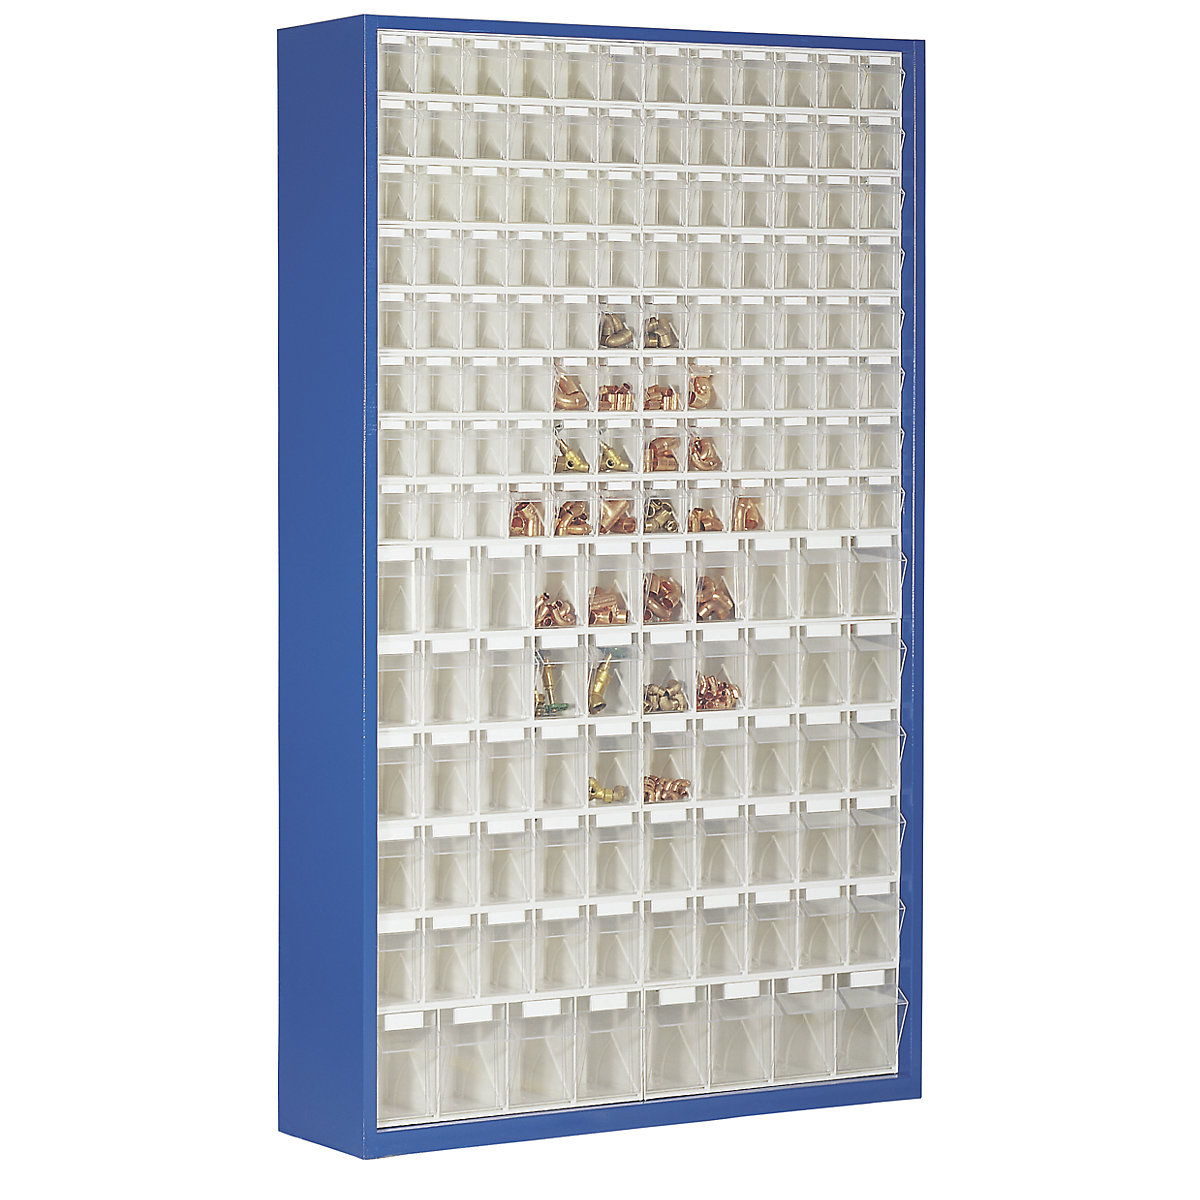 Armario-almacén de chapa de acero, con 154 cajas plegables transparentes, azul genciana